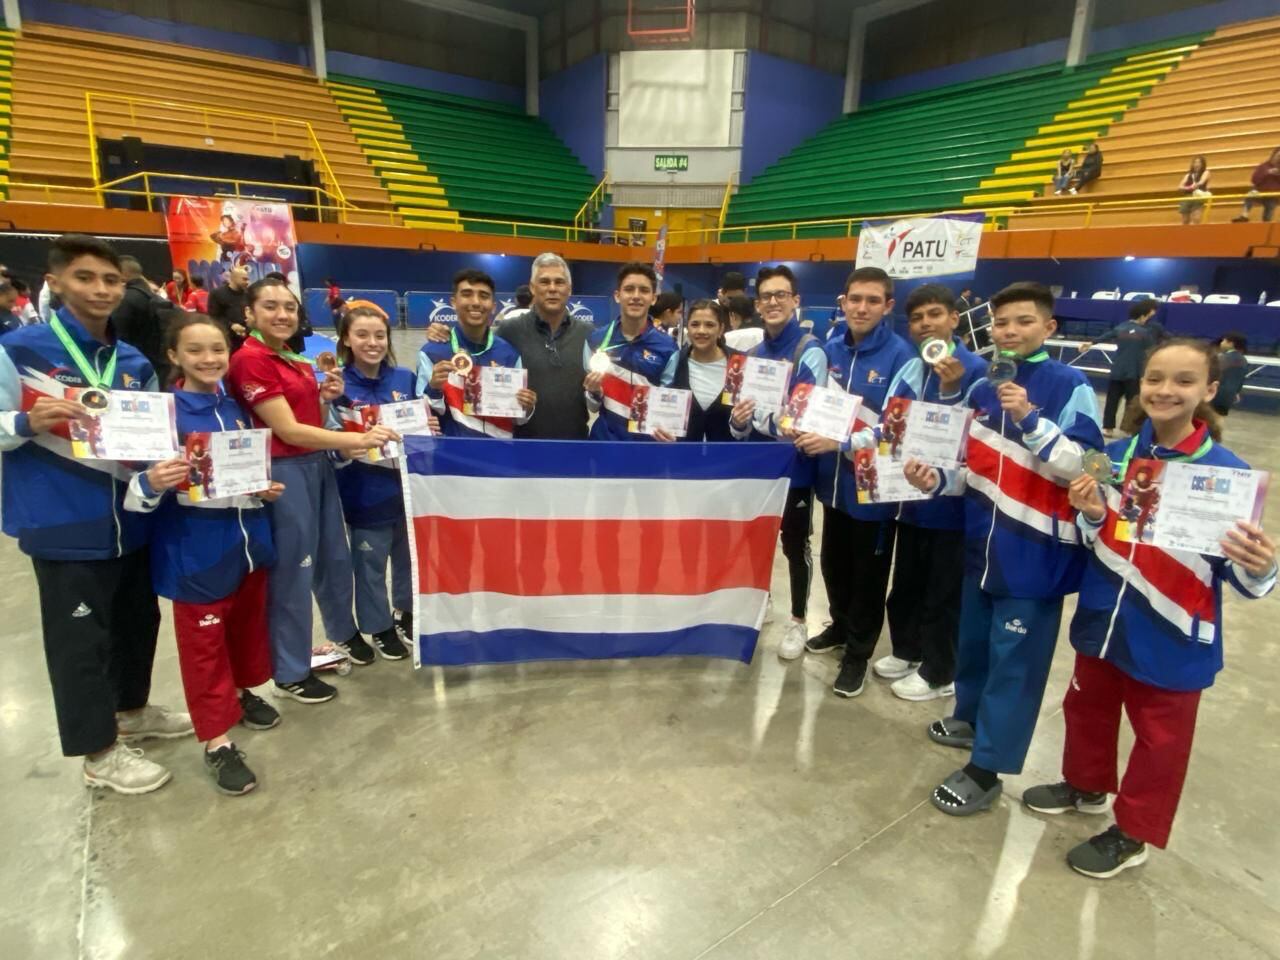 La Selección Nacional de taekwondo obtuvo una medalla de oro, cinco de plata y 10 de bronce, en Copa Presidente que se realizó en nuestro país, con la participación de 33 naciones. Fotografía: Olman Mora.